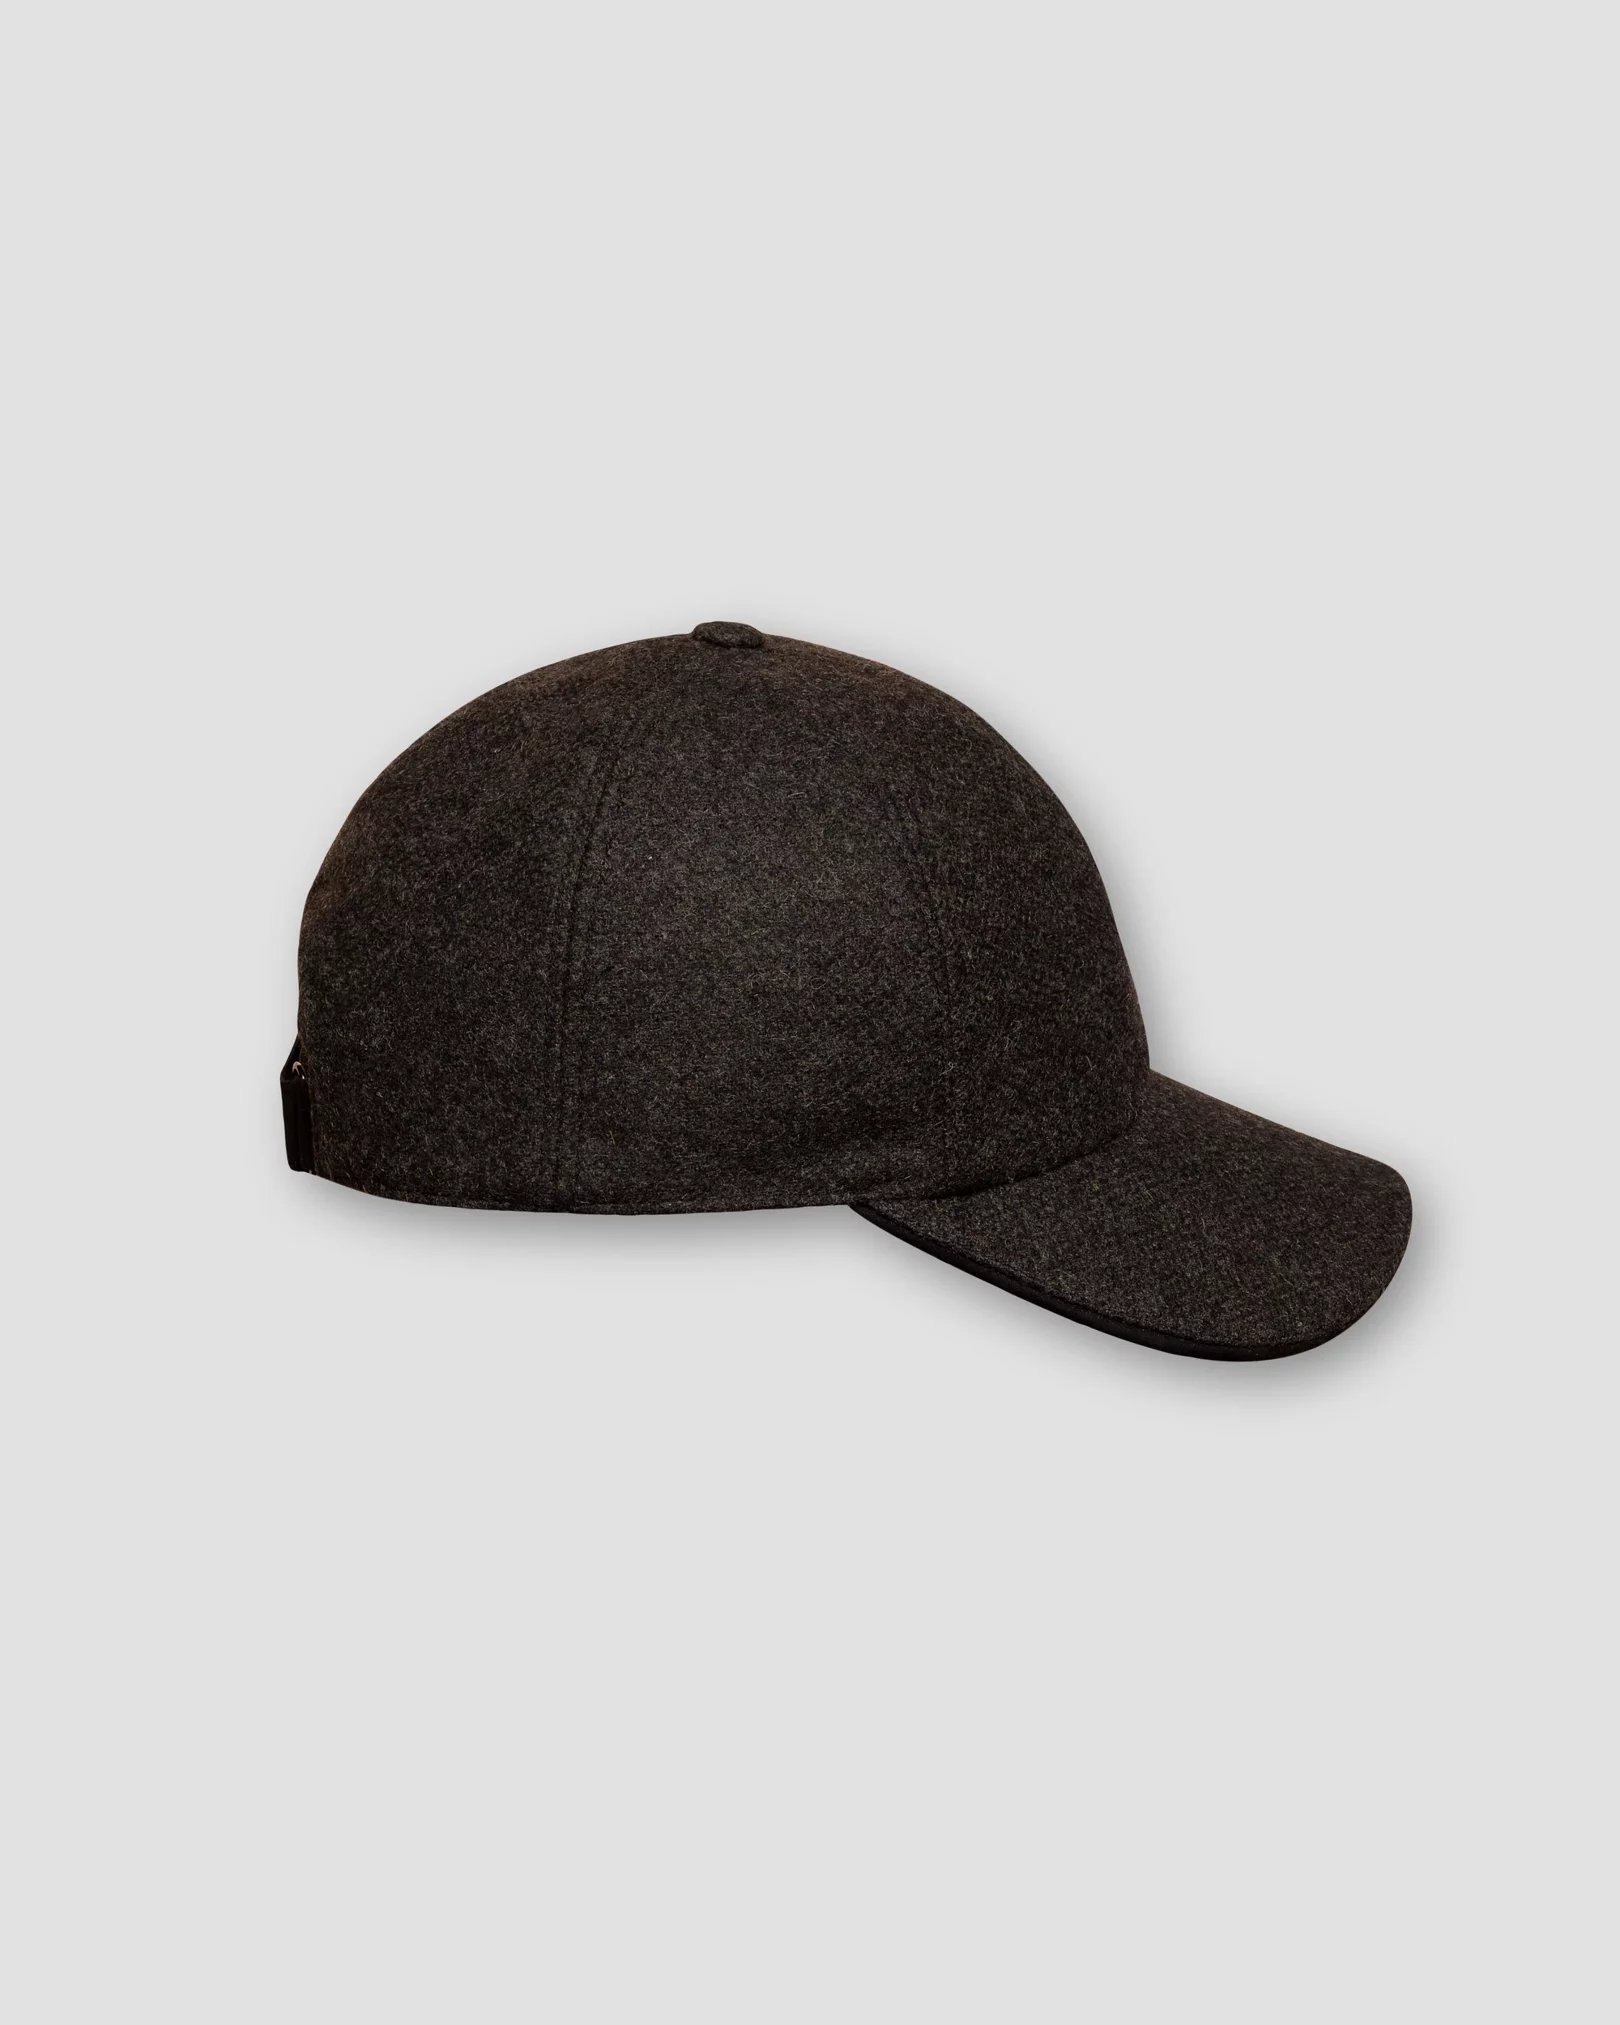 Eton - black wool baseball cap